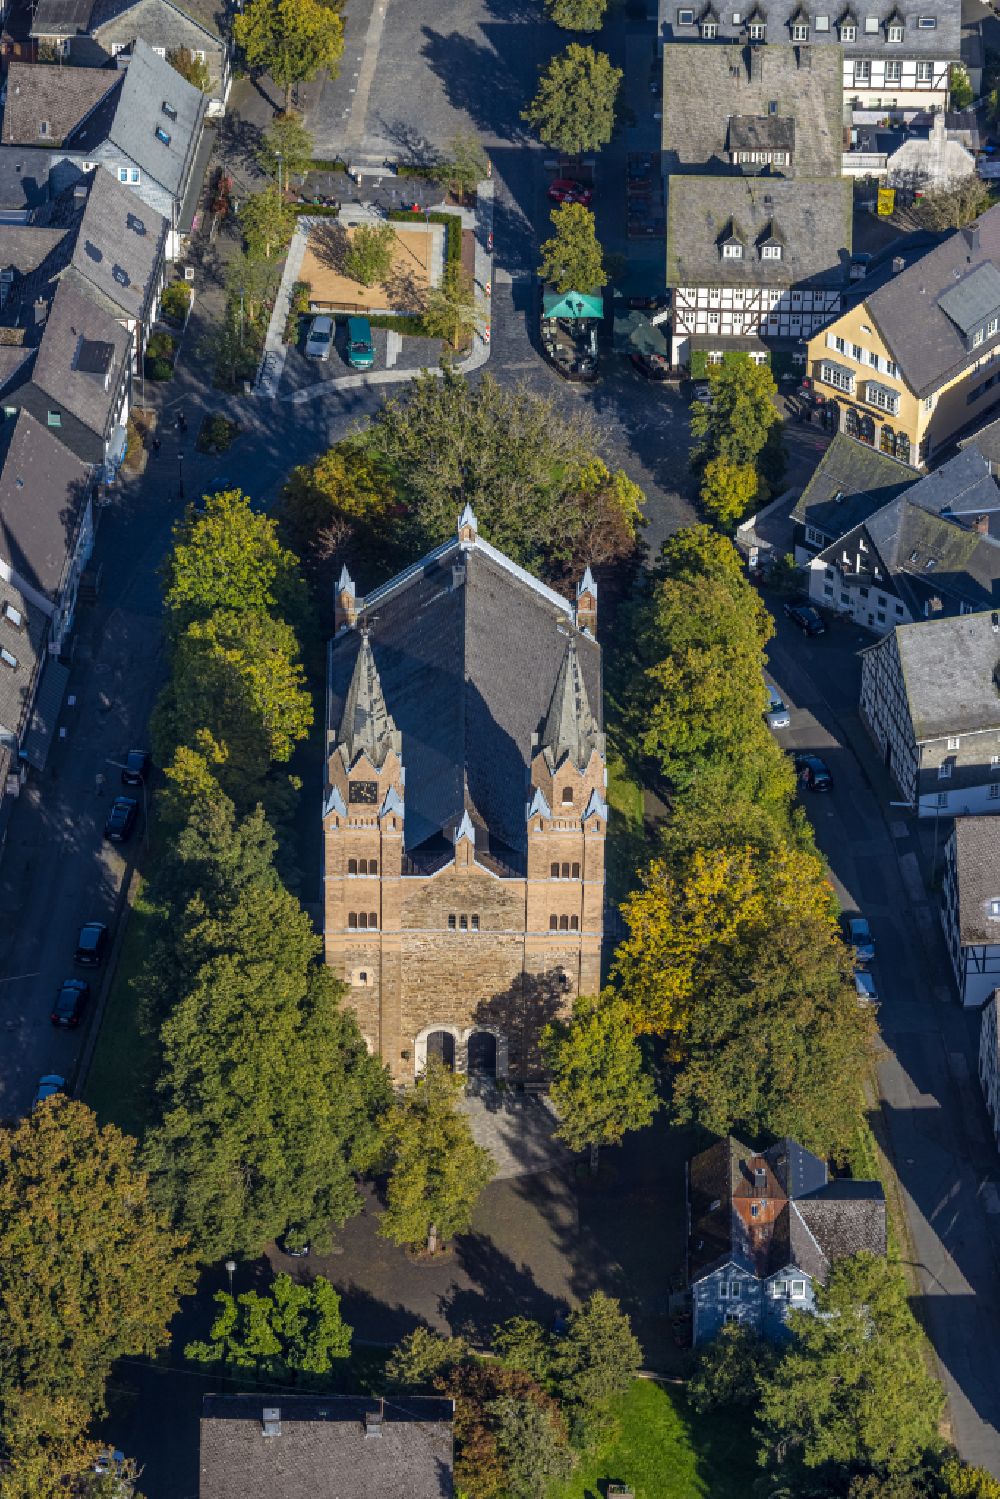 Aerial image Hilchenbach - Church building Evangelisch-Reformierte Kirchengemeinde on place Kirchplatz in Hilchenbach at Siegerland in the state North Rhine-Westphalia, Germany